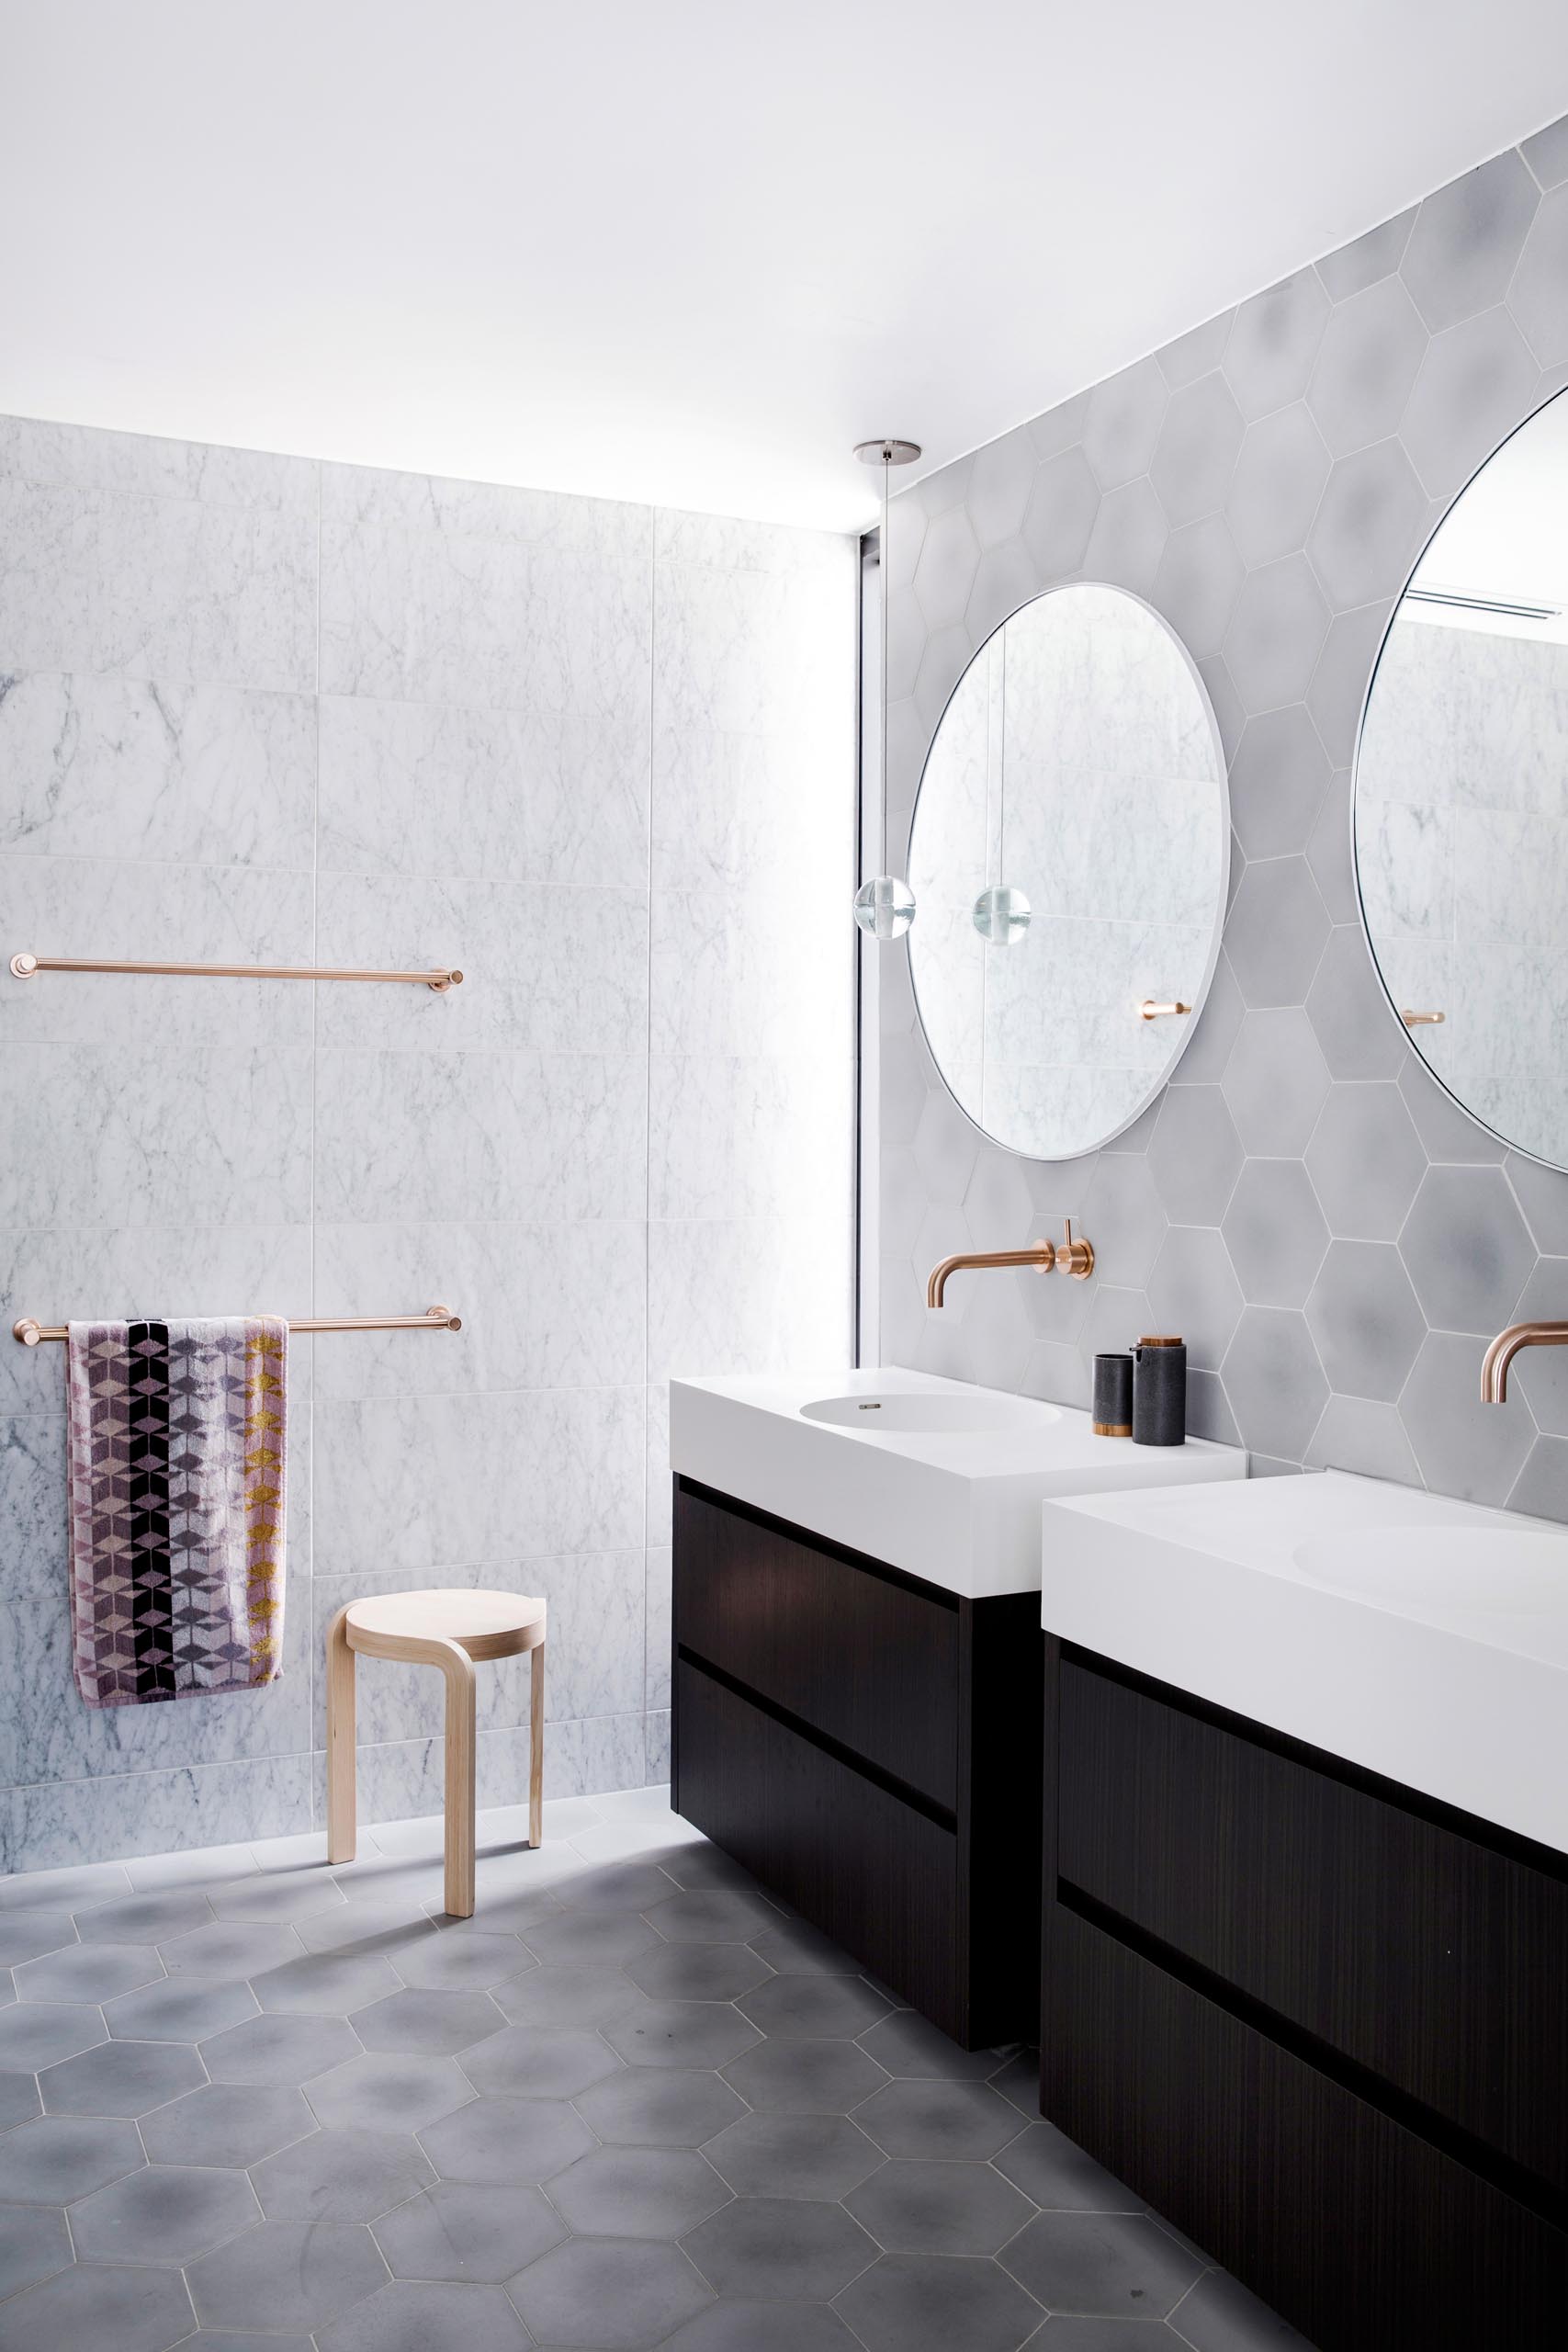 Входя в эту главную ванную комнату, естественный свет из высокого узкого окна в углу освещает вешалки для полотенец из полированного розового золота, прикрепленные к стене, покрытые плиткой большого формата.